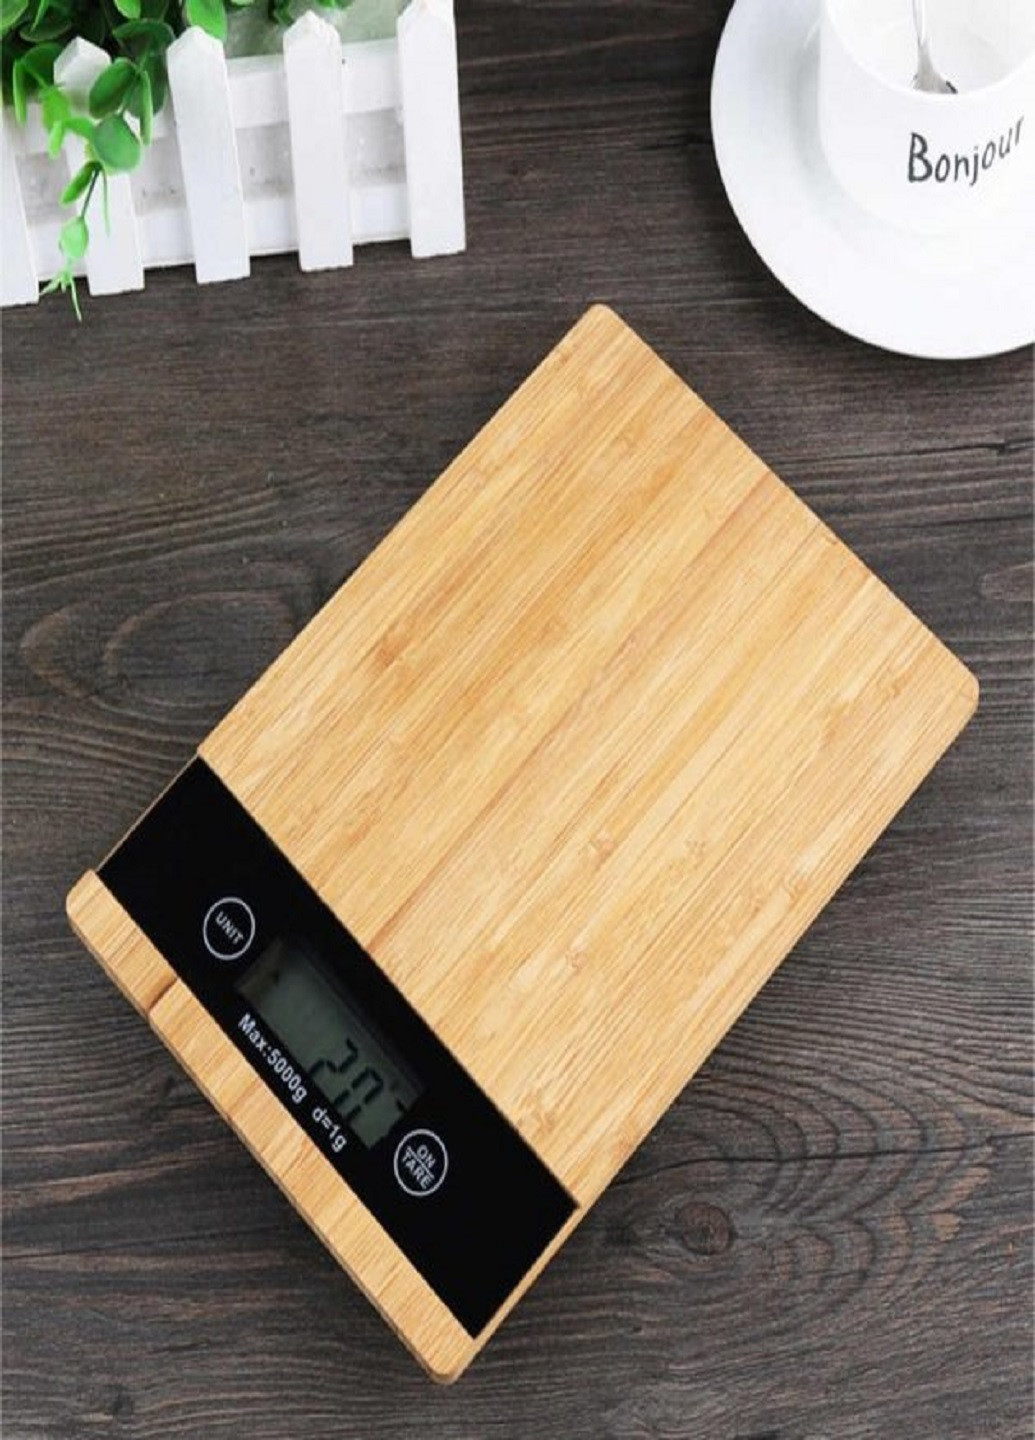 Кухонные электронные деревянные весы бамбук MS-A до 5 кг VTech (253319243)